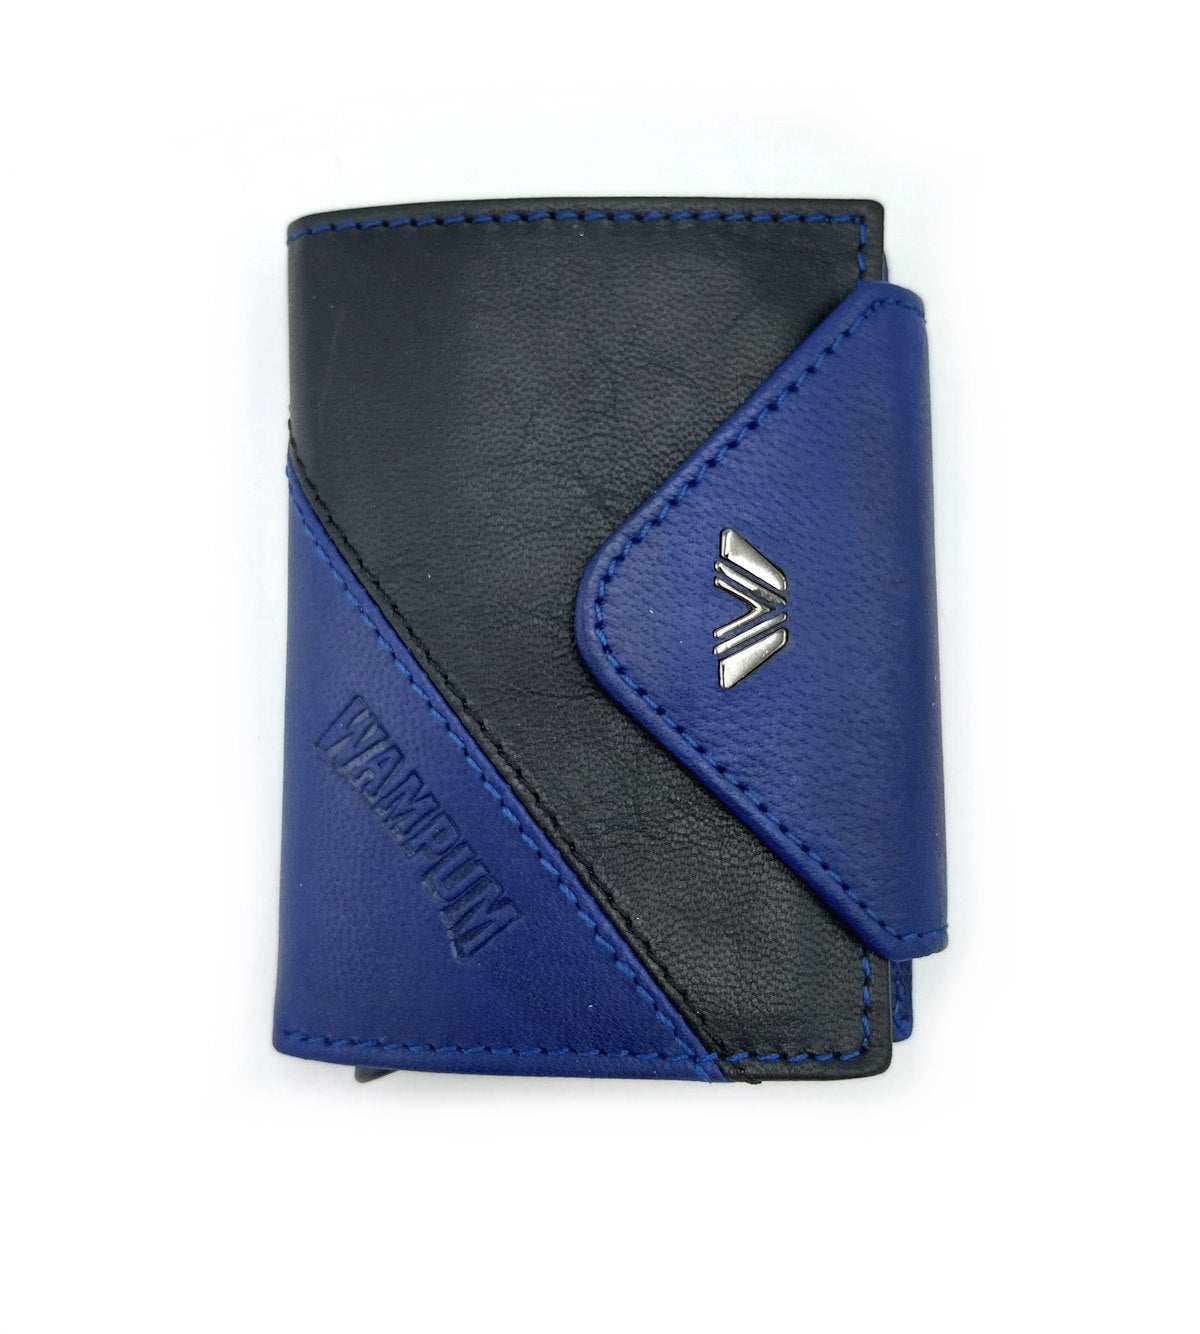 Genuine leather wallet, Wampum, art. pdk397-92